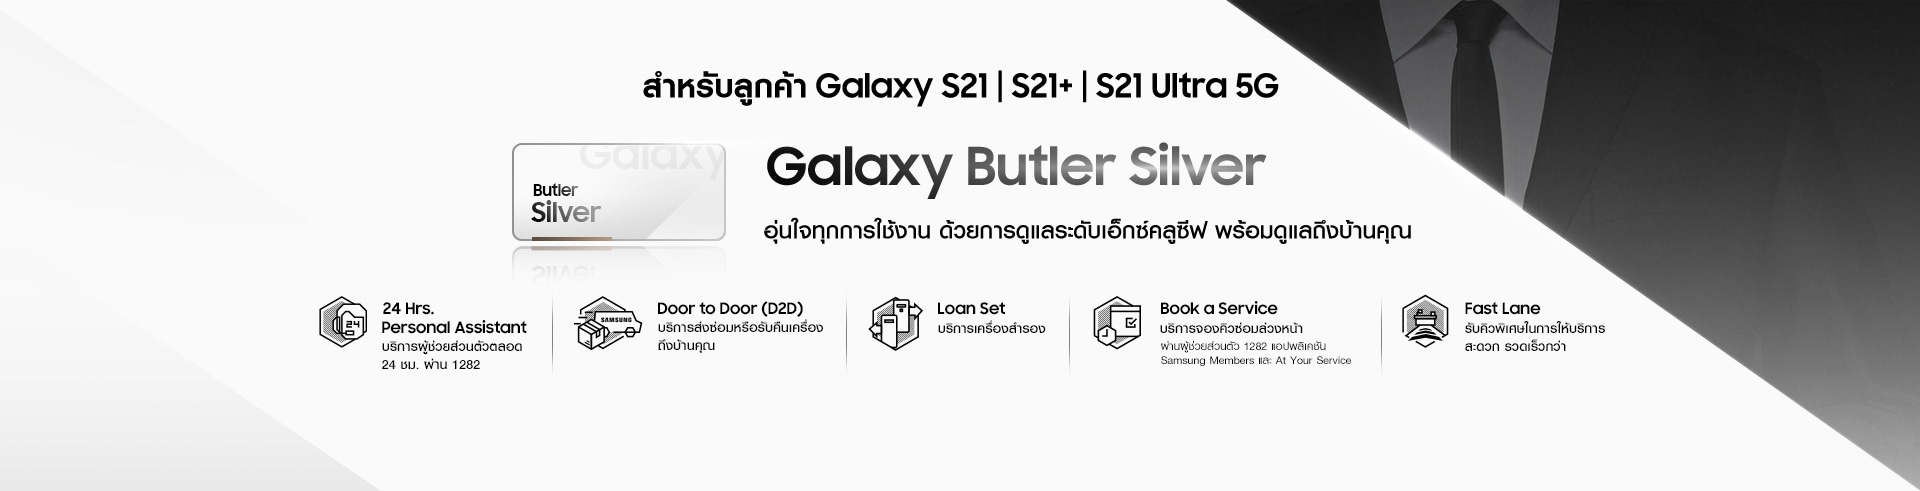 ดูโปร Samsung Galaxy S21 Ultra 5G รับบริการ Galaxy Butler Silver บริการผู้ช่วยส่วนตัวตลอด 24 ชม. ผ่าน 1282 พร้อมบริการส่งซ่อมเครื่องหรือรับคืนถึงบ้าน